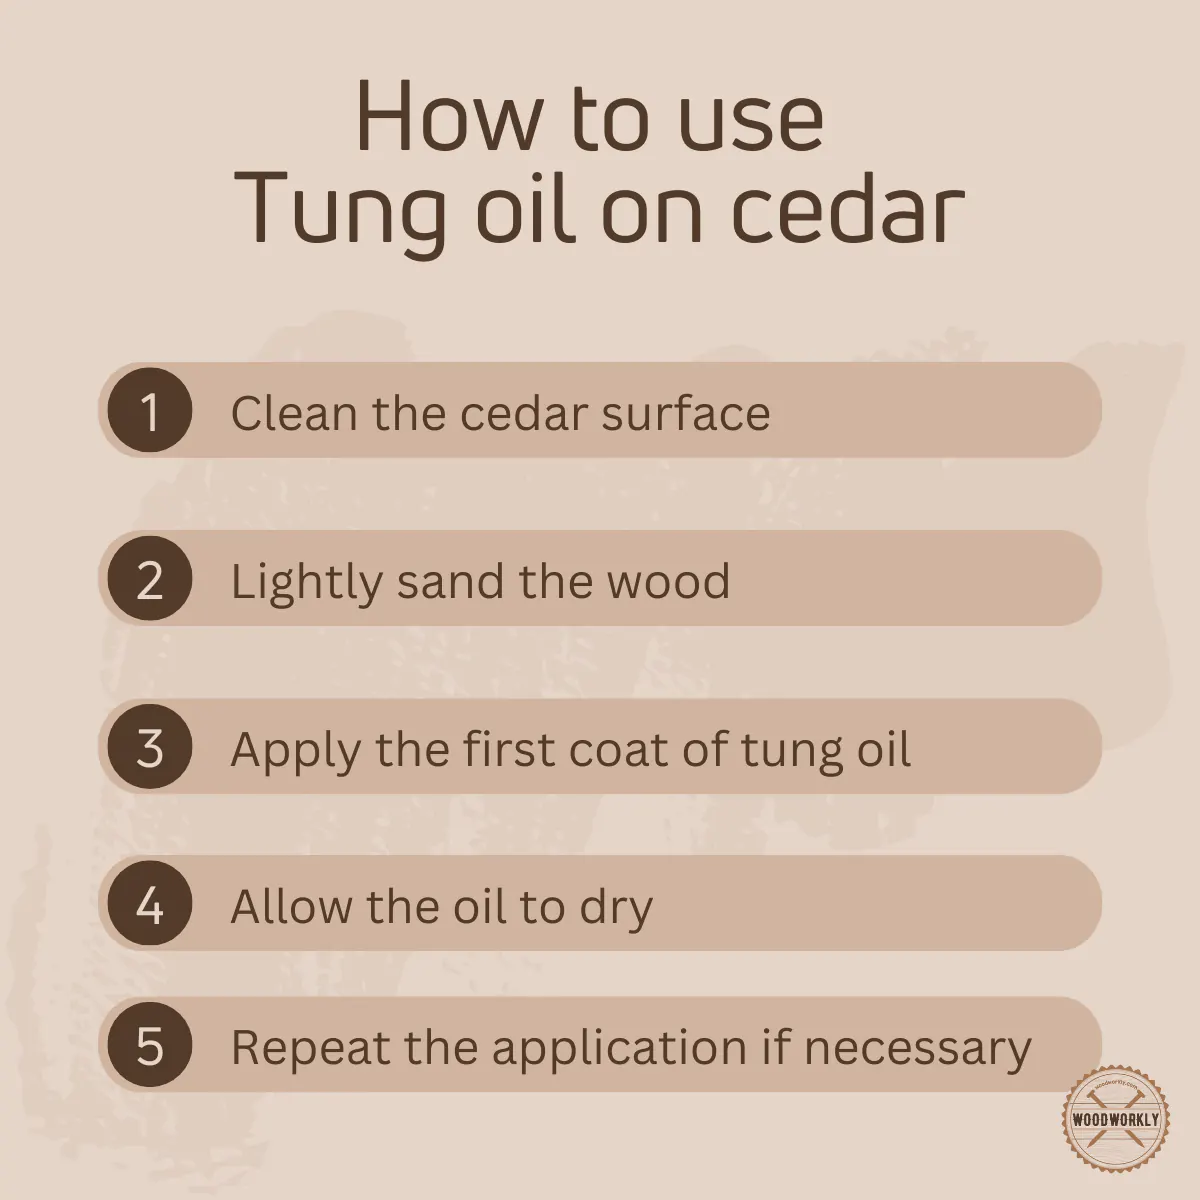 How to use tung oil on cedar